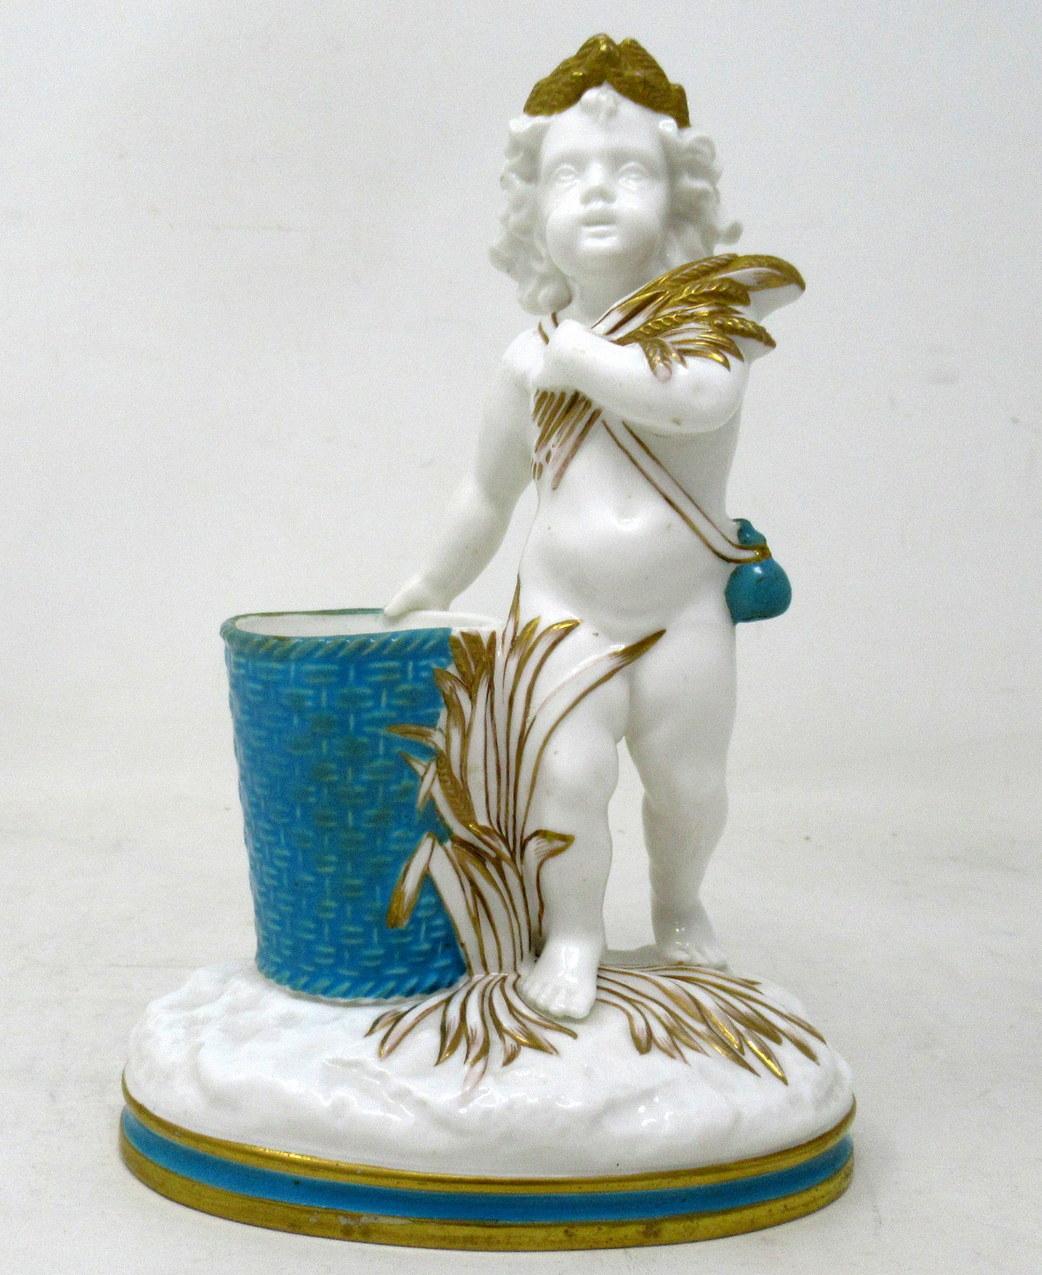 Wunderschönes Beispiel eines englischen Minton-Porzellanaufsatzes oder einer Blumenvase, die eine spärlich bekleidete, Weizen erntende Frau darstellt, die auf einem naturalistischen runden Sockel neben einem zylindrischen Gefäß mit Korbgeflecht